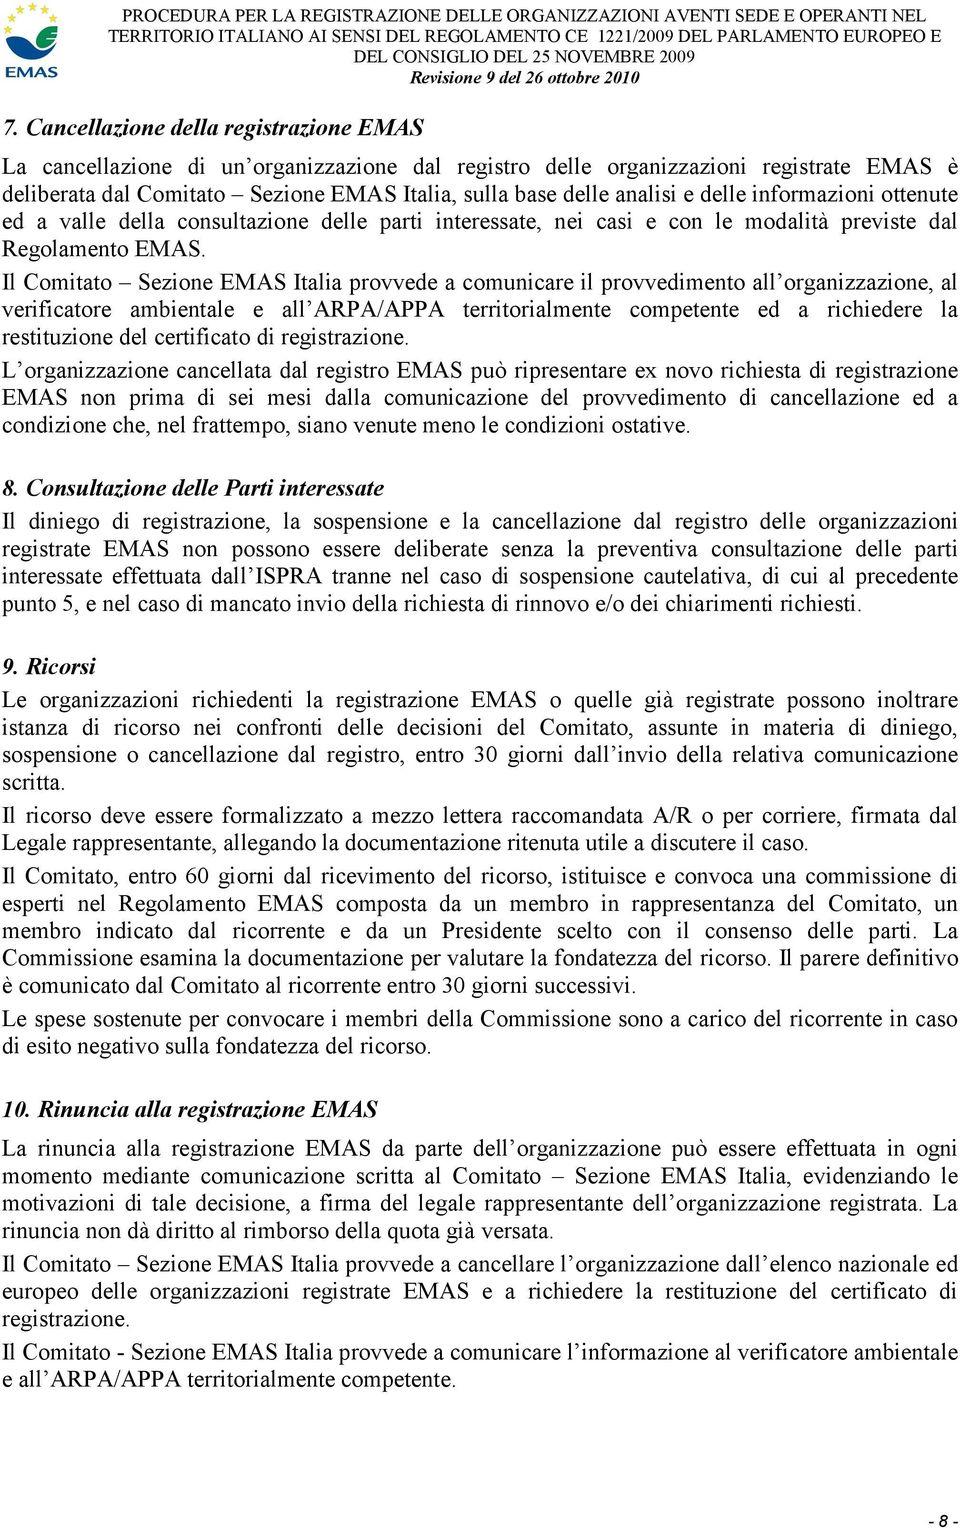 Il Comitato Sezione EMAS Italia provvede a comunicare il provvedimento all organizzazione, al verificatore ambientale e all ARPA/APPA territorialmente competente ed a richiedere la restituzione del